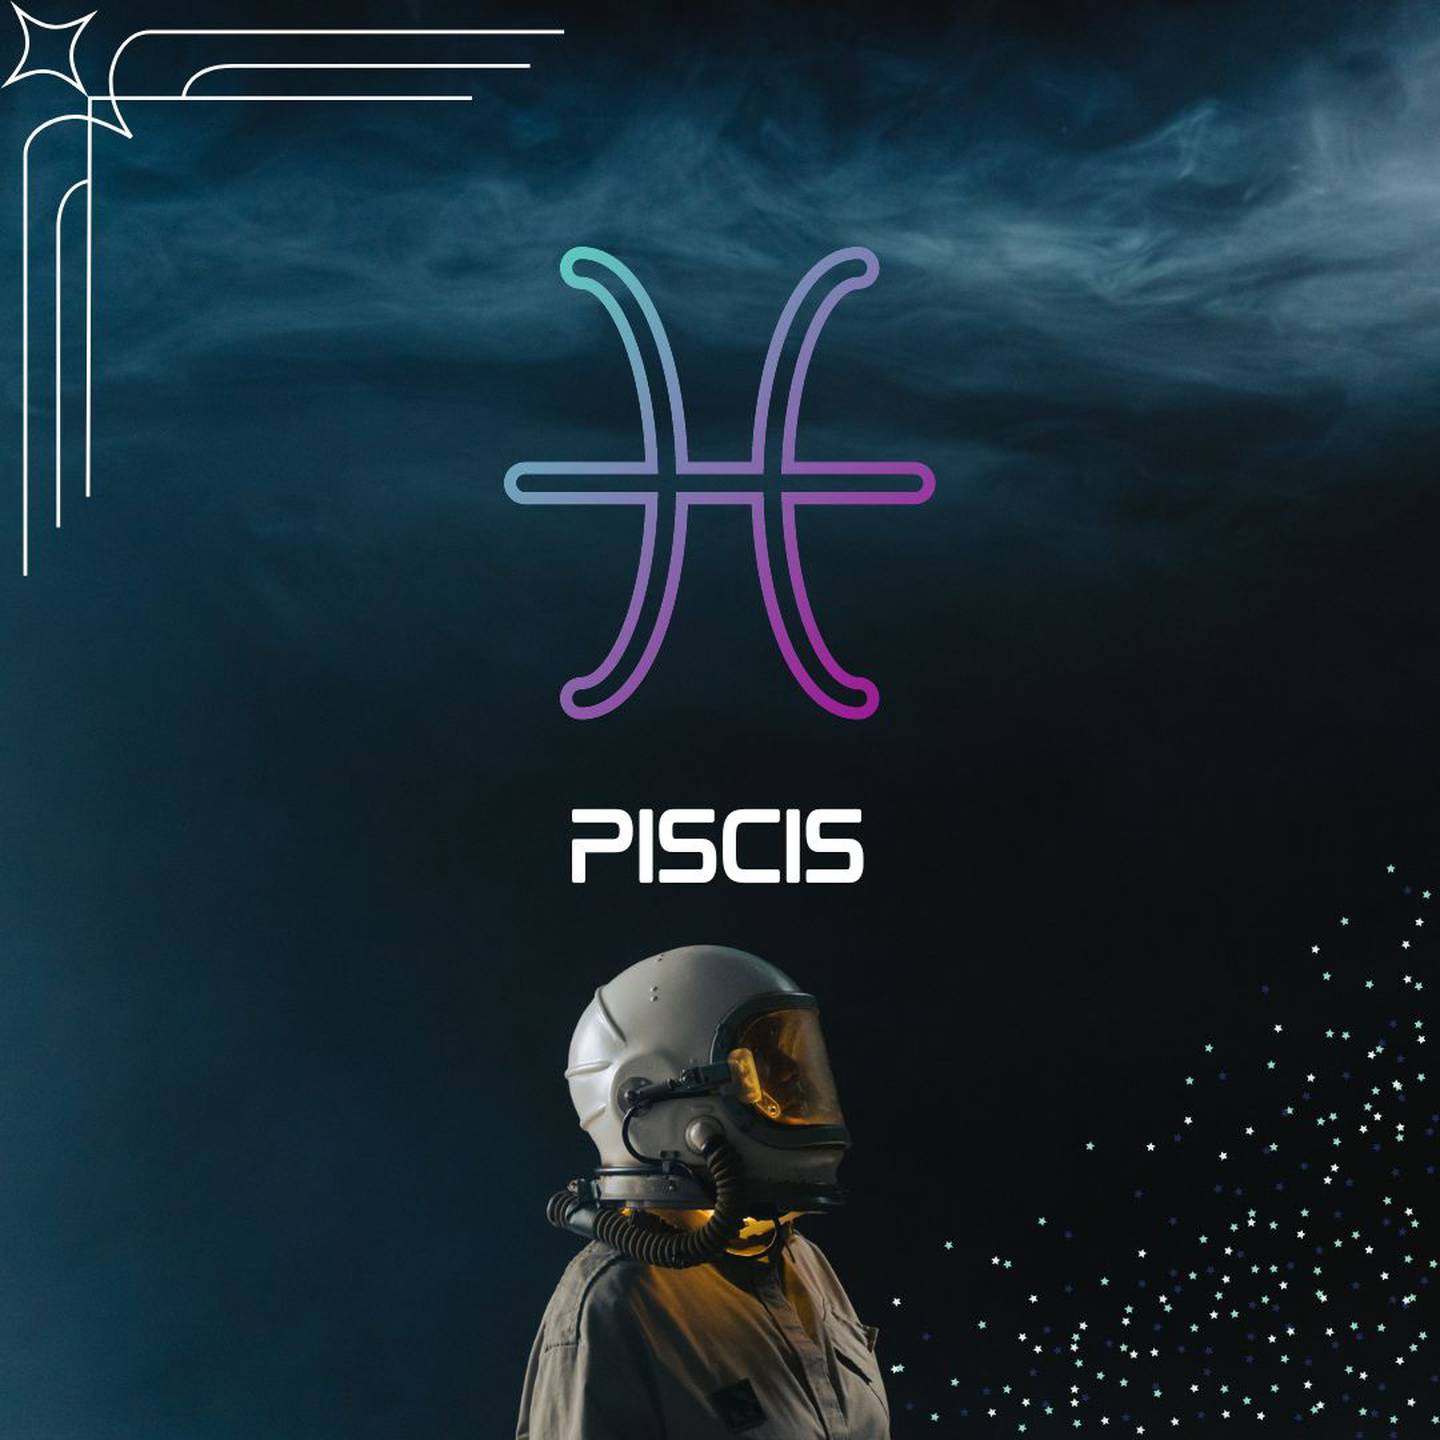 Sobre un fondo oscuro, con humo en la parte superior, aparece el símbolo de Piscis. Al centro aparece el nombre del signo en color blanco y todavía más abajo, un astronauta está mirando hacia la derecha.